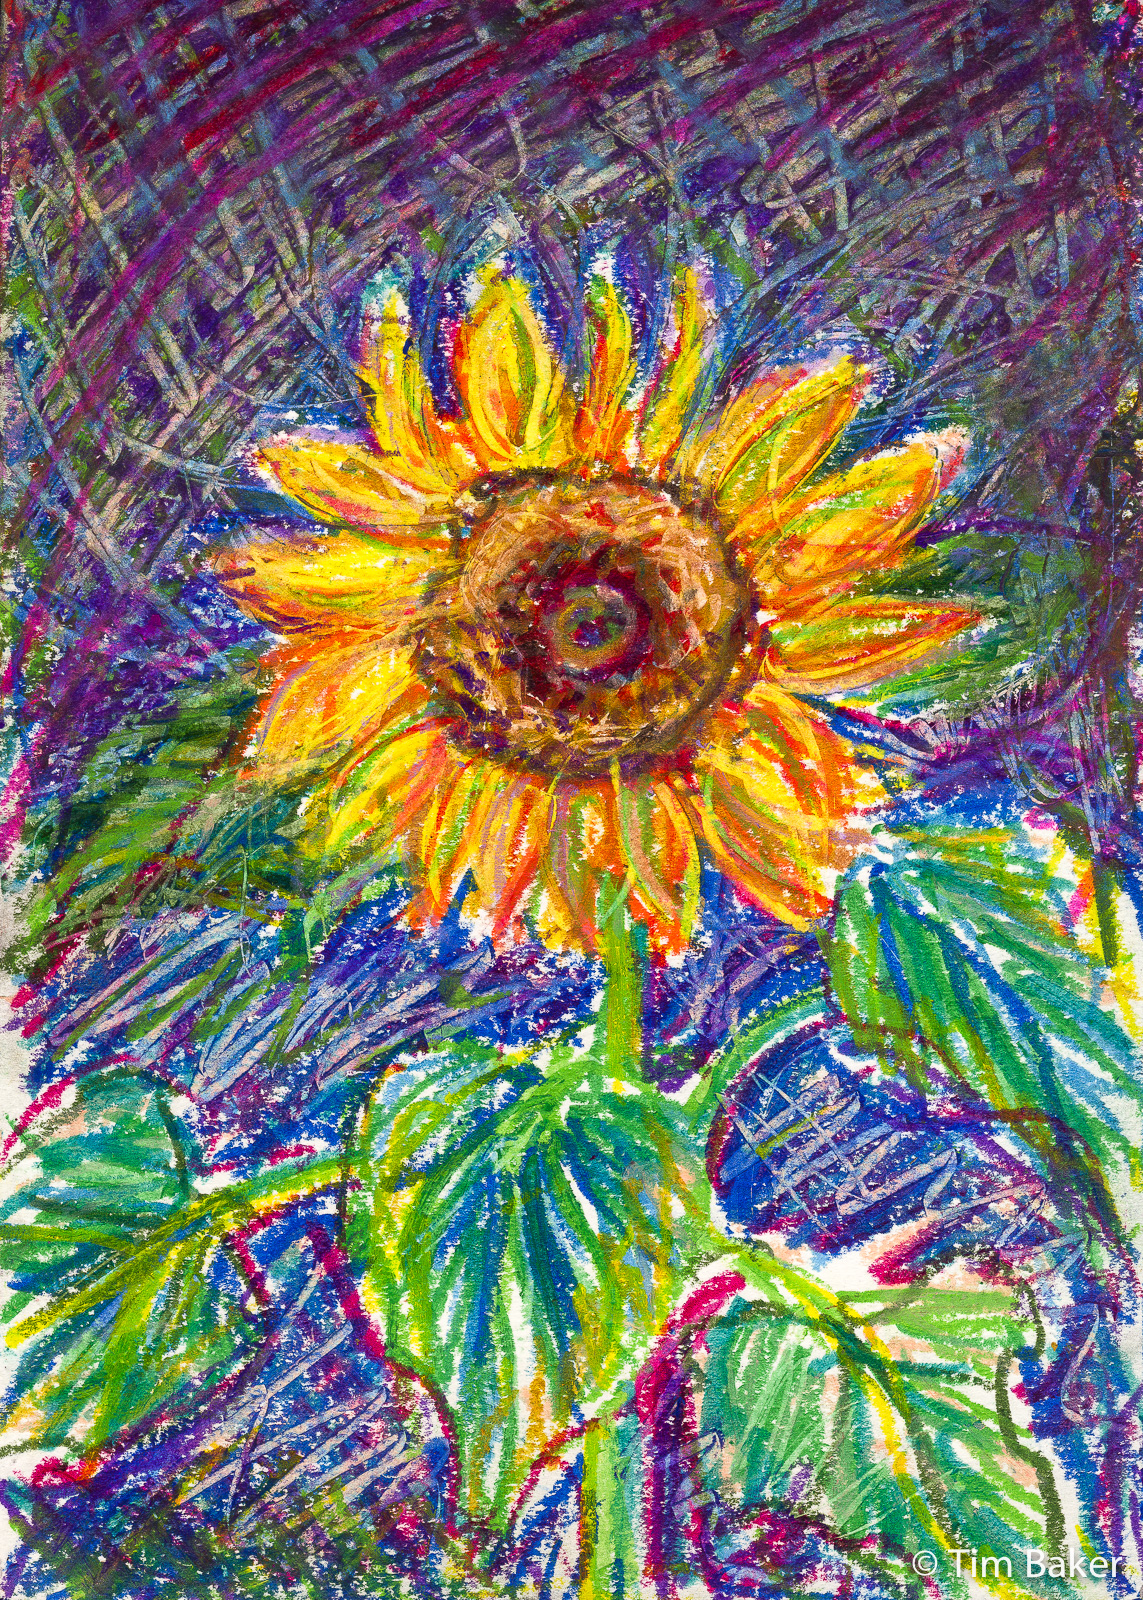 Sunflowers, Irises and Sensory Gardens